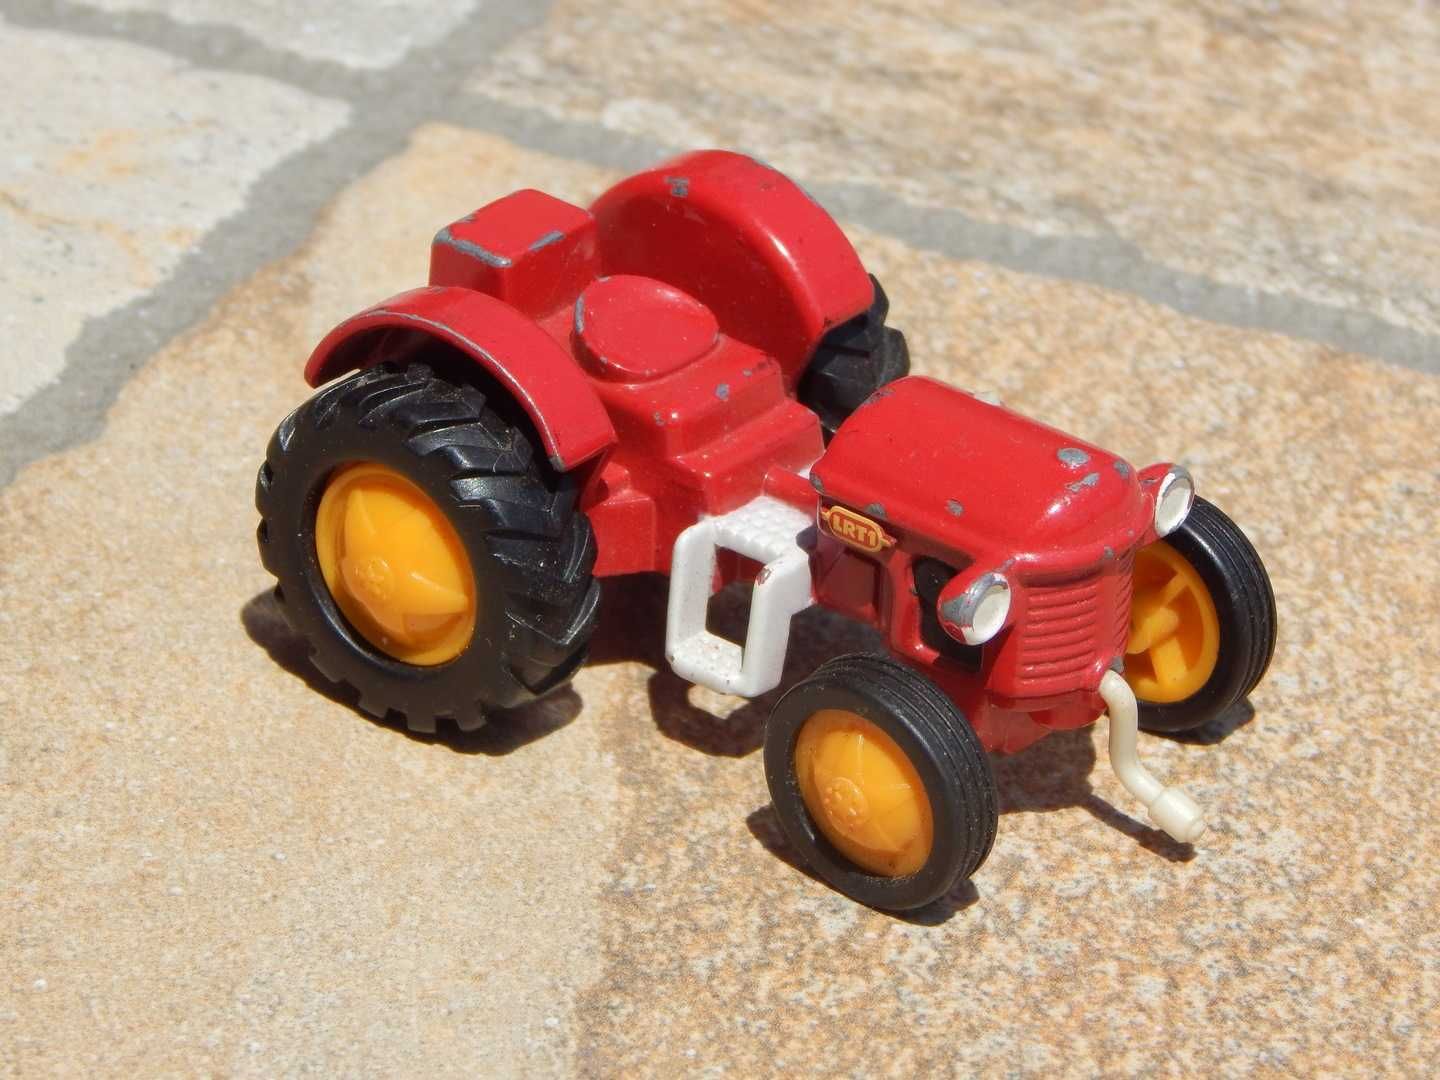 Macheta tractor agricol Little Red Tractor Corgi 2005 uzata